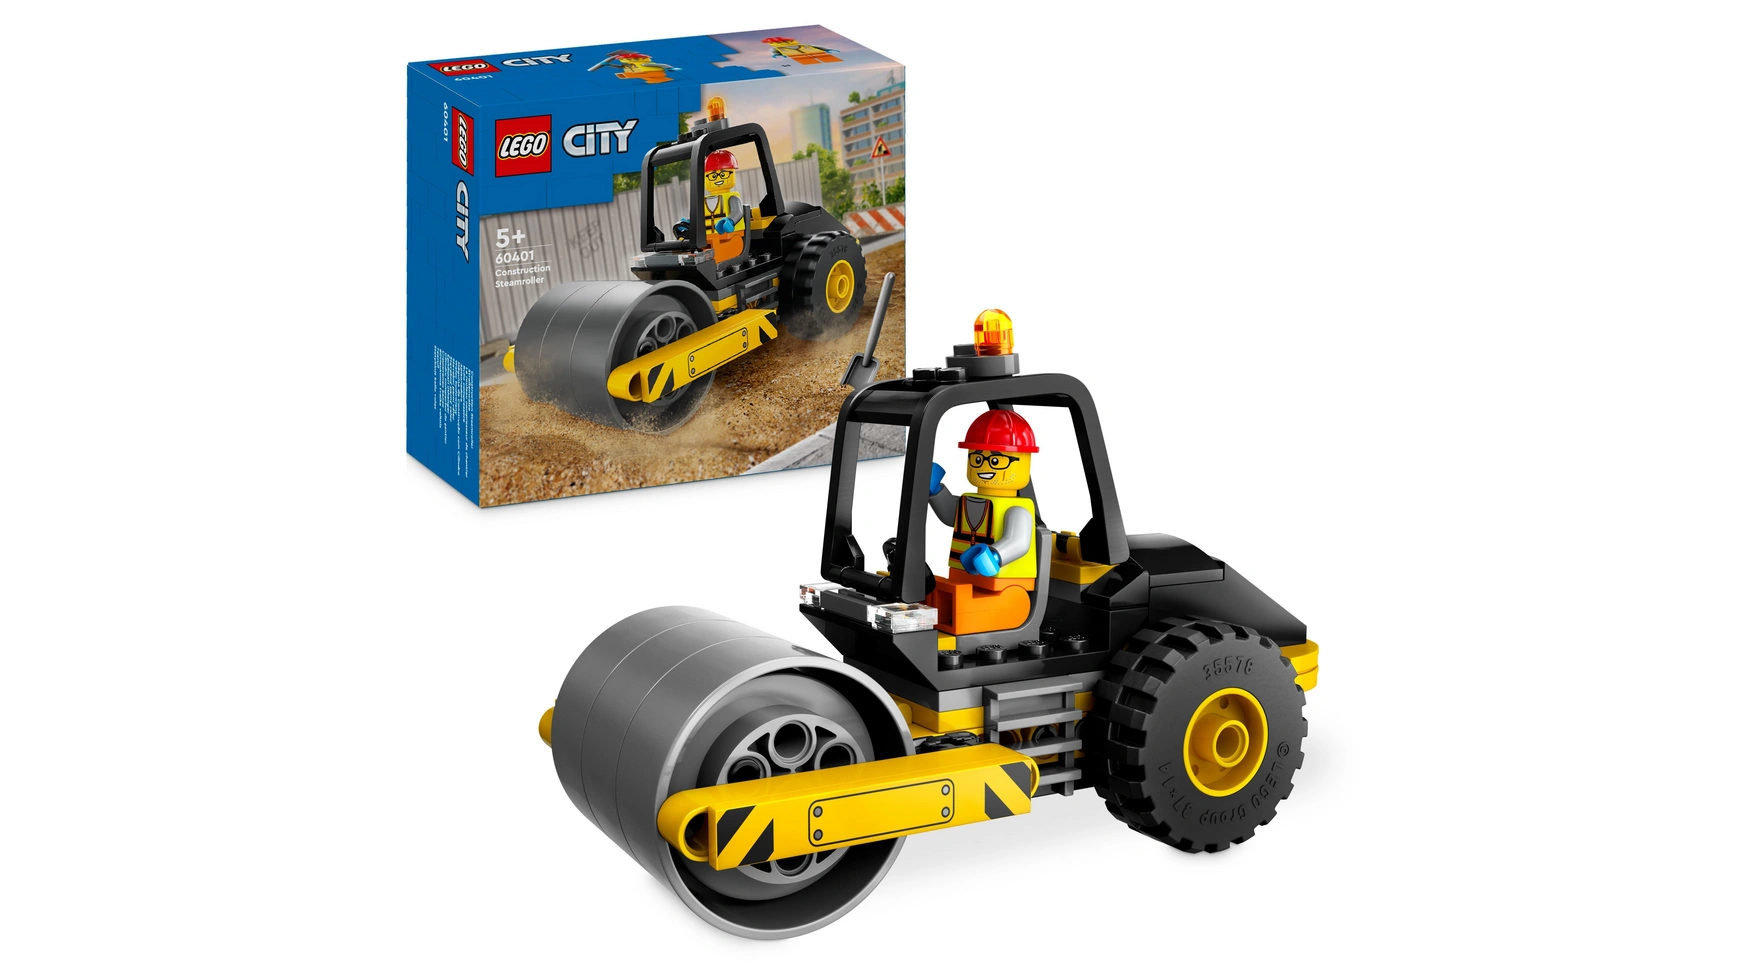 Lego City Дорожный каток, игрушка для стройплощадки со строителем адвент календарь набор строительных игрушек для детей lego city building toy set for kids